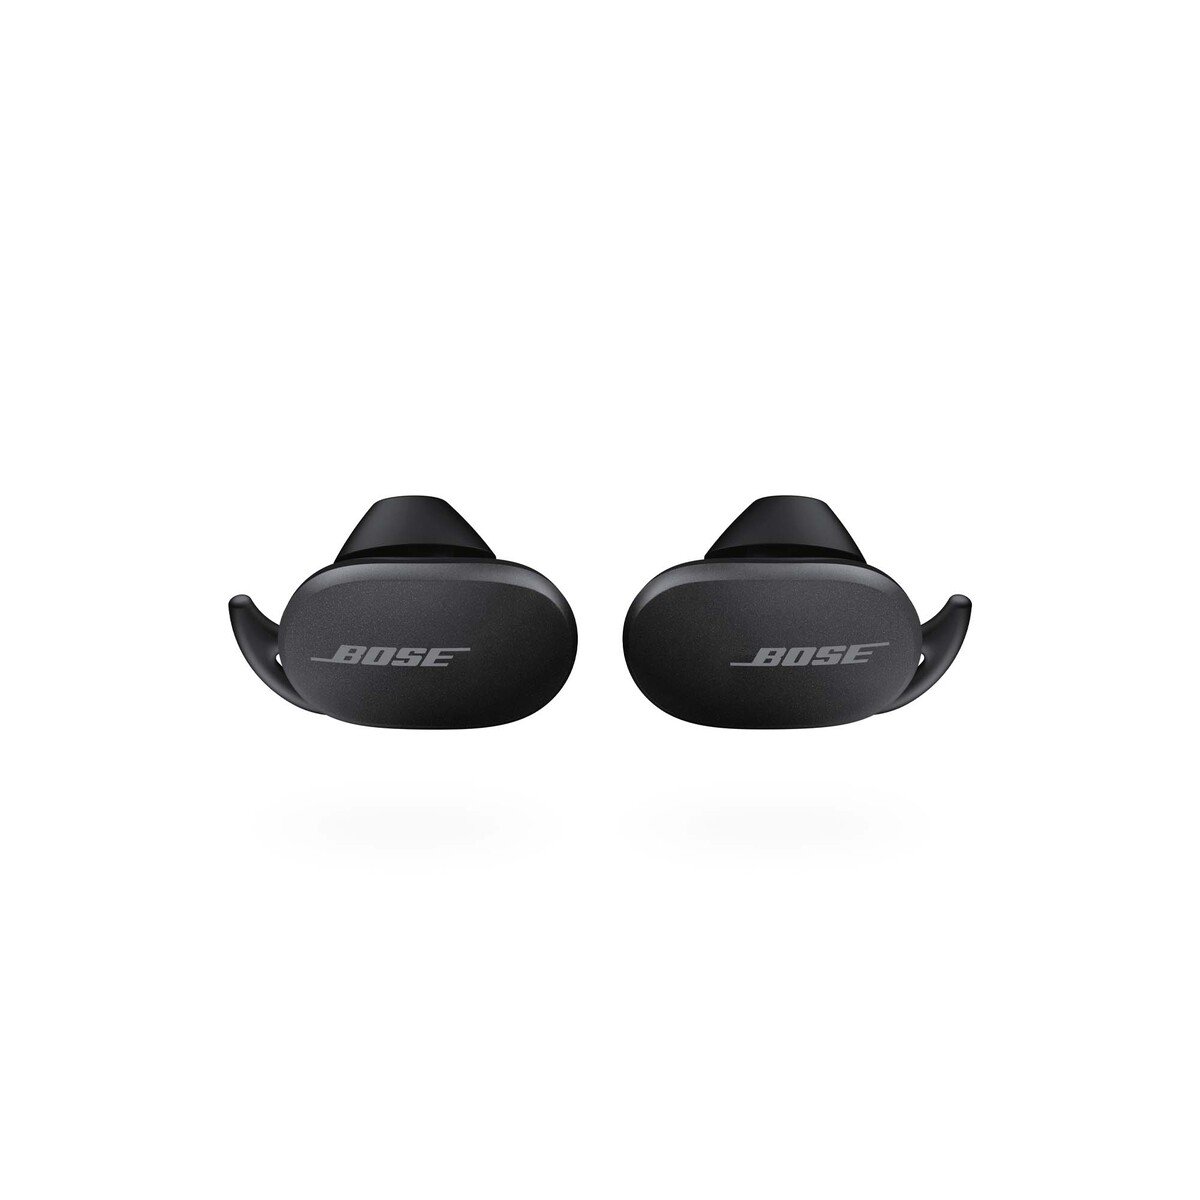 Bose Quiet Comfort Earbuds Black